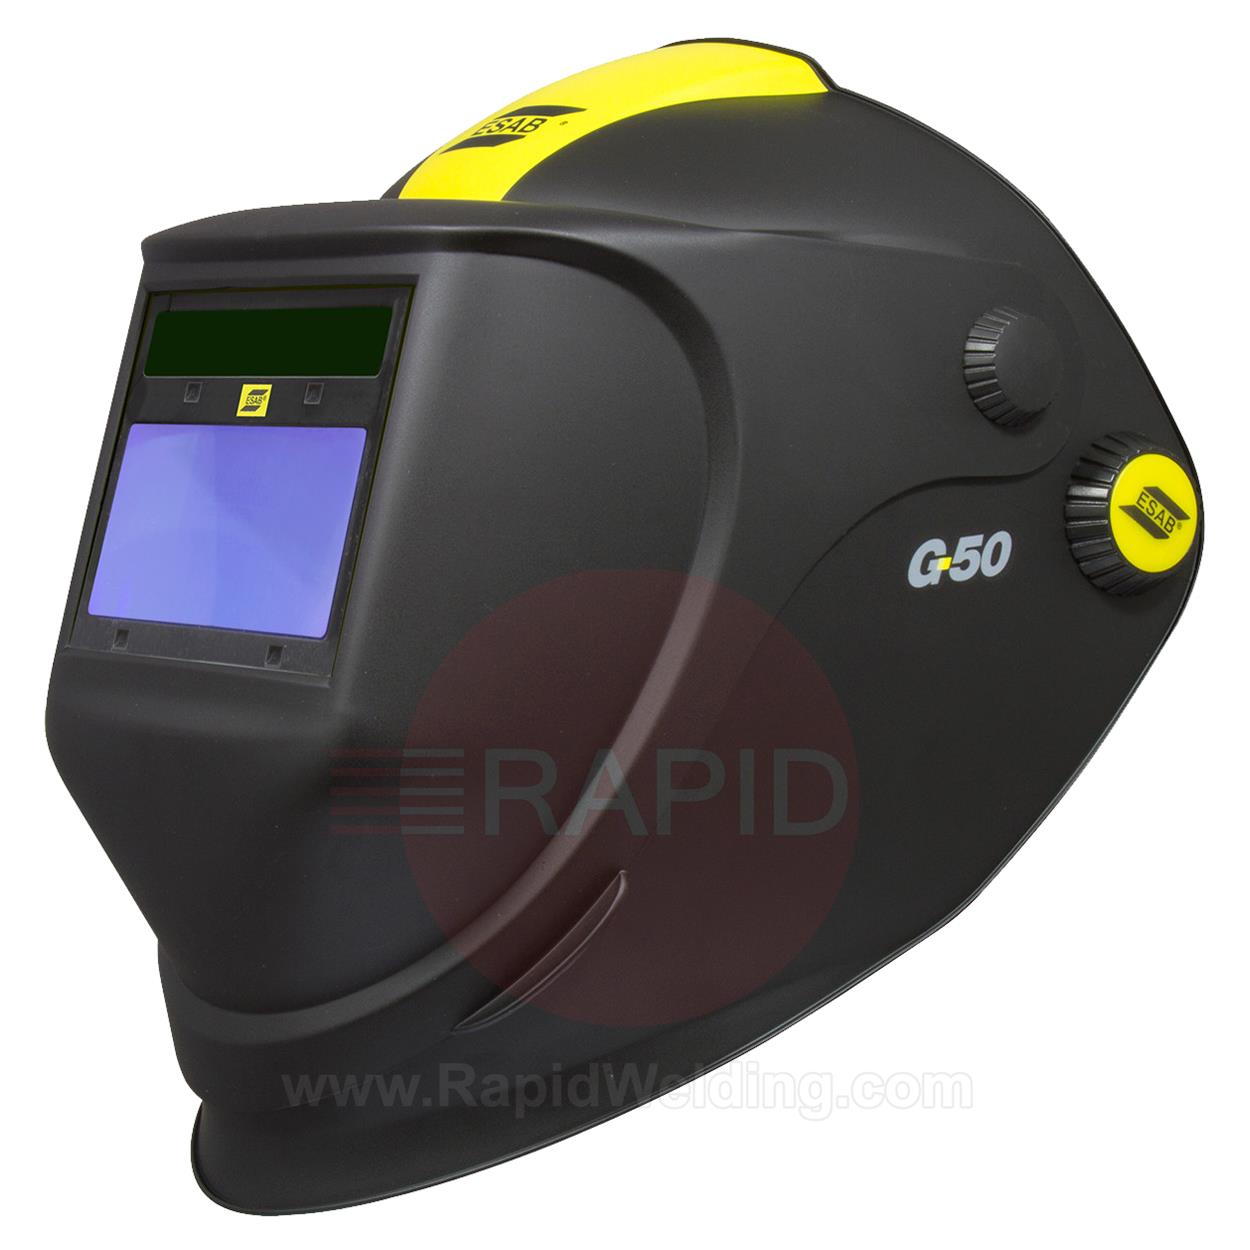 0700000438  ESAB G50 Flip-up Weld & Grind Helmet with Shade 9-13 Auto Darkening Filter